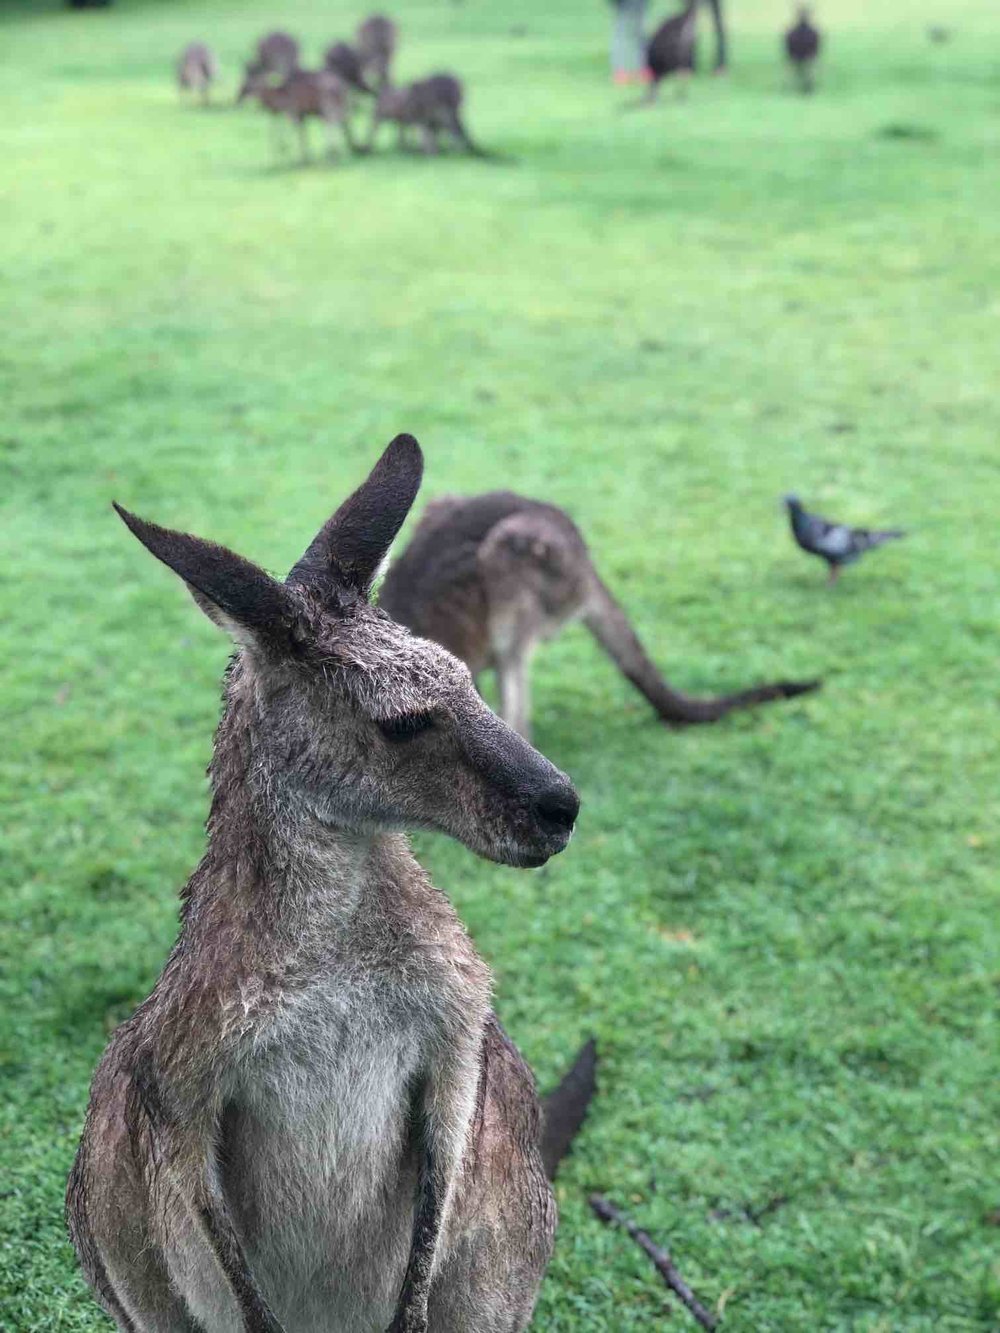 Kangaroo in Australia .jpg